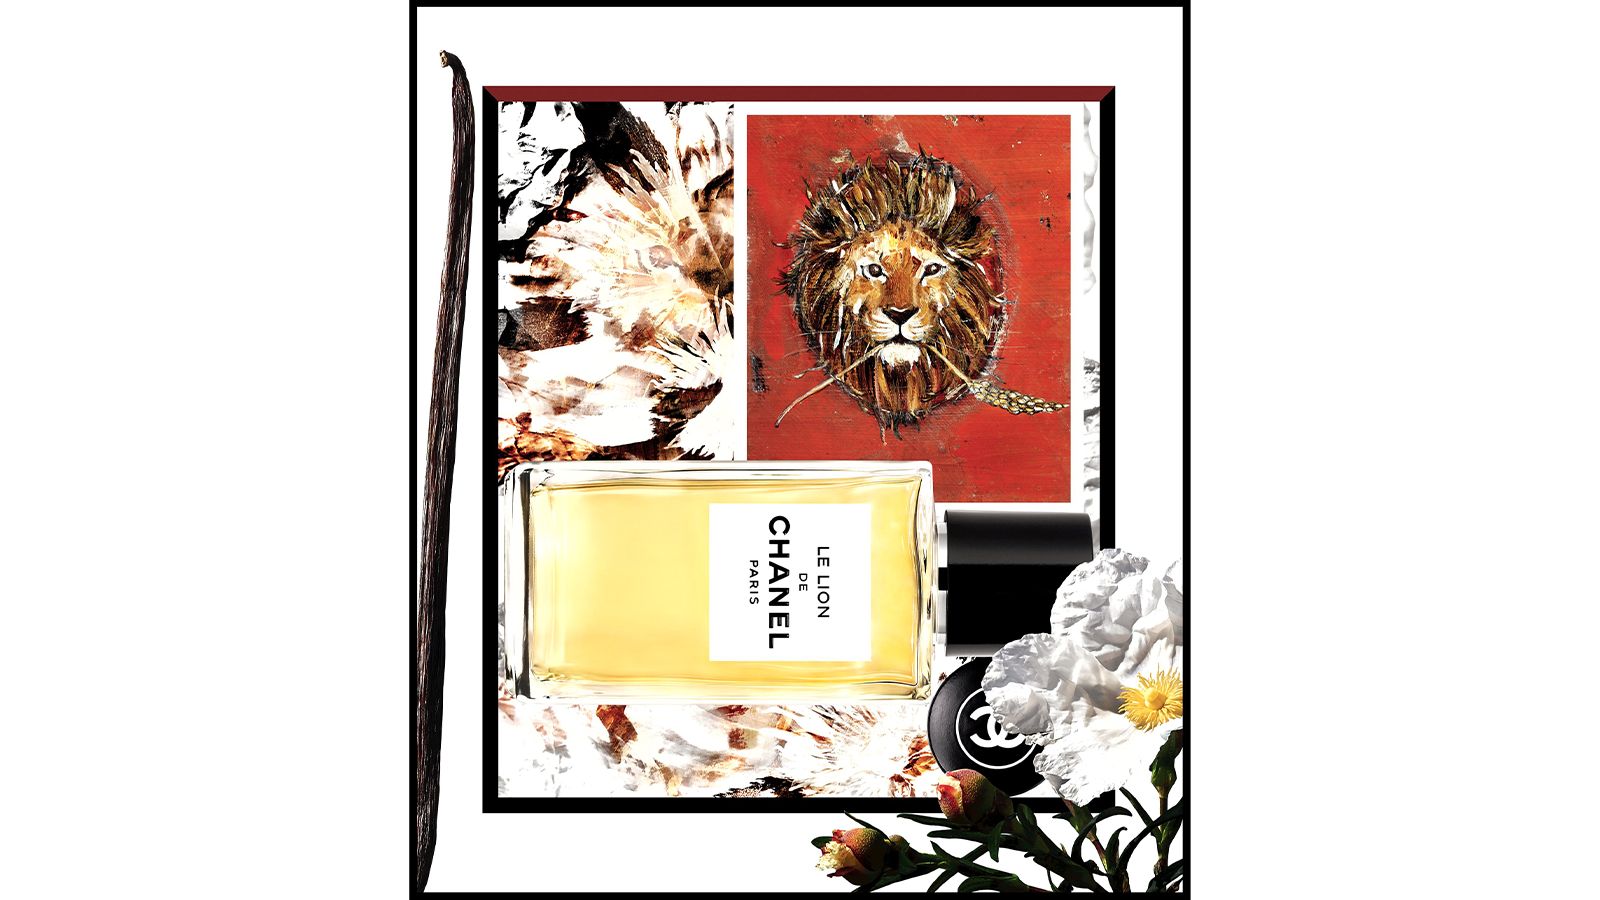 Le Lion de Chanel: обновление эксклюзивной коллекции ароматов Les Exclusifs De Chanel